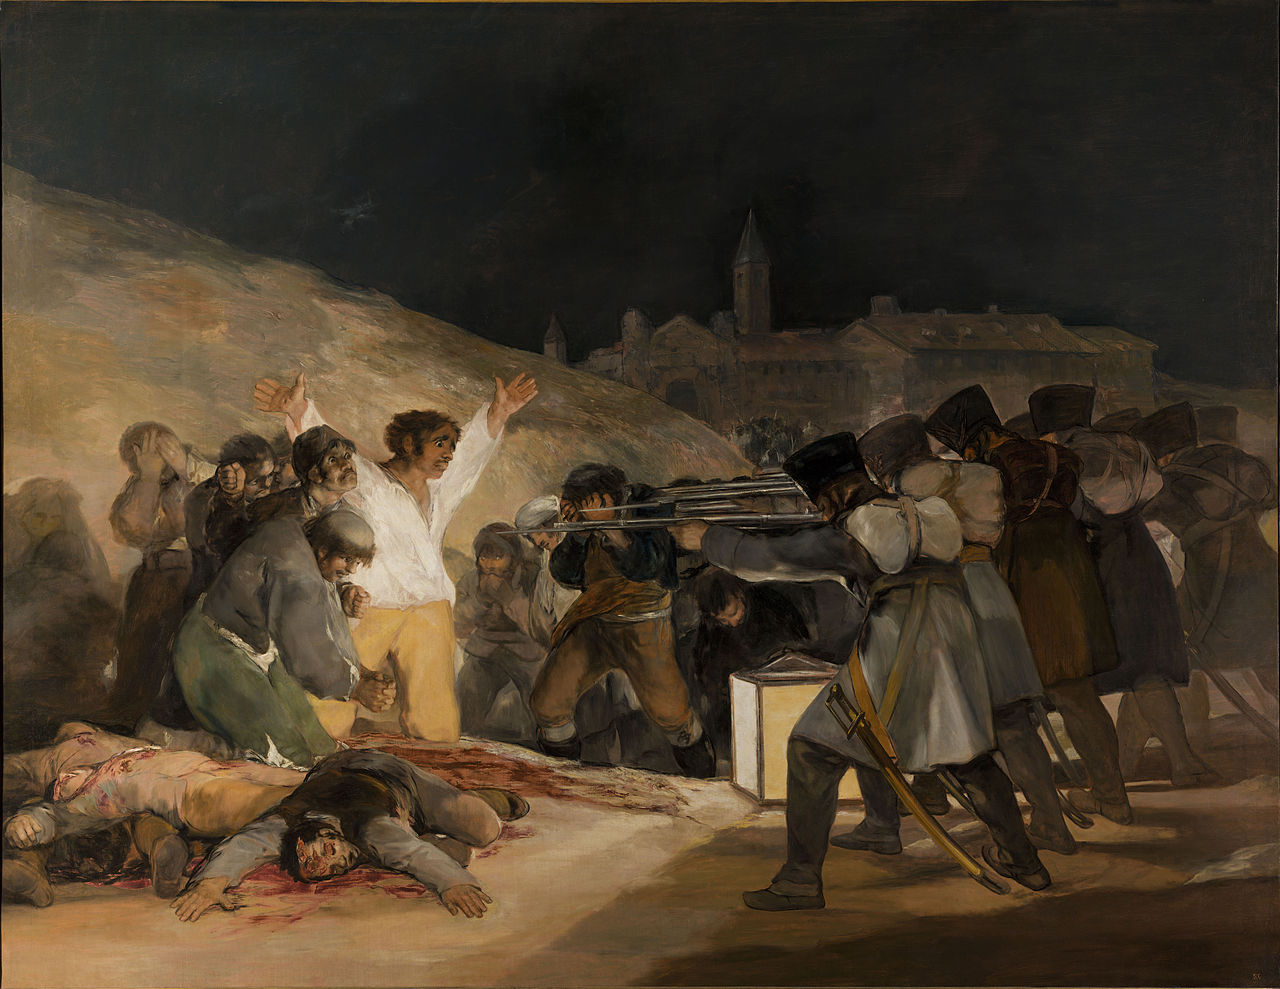 Der dritte May 1808 by Francisco Goya - 1814 - 268 cm × 347 cm Museo del Prado